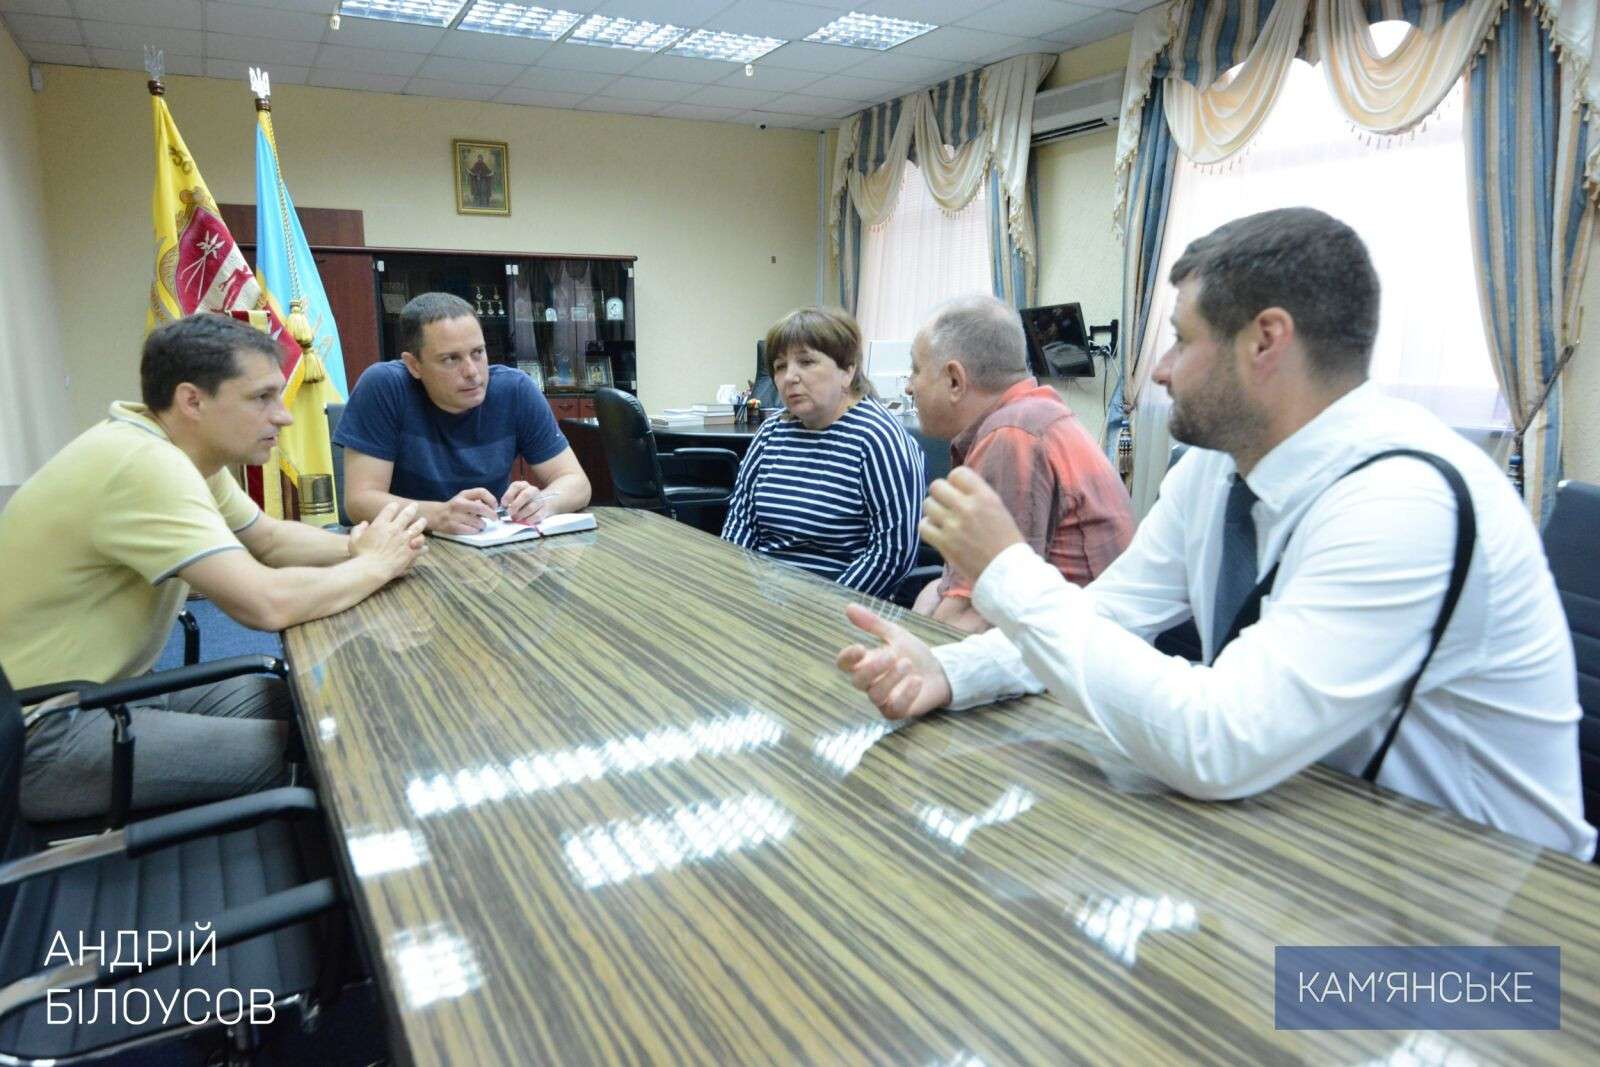 030619_Мэр Каменского встретился с руководством Национального Союза художников Украины.jpg